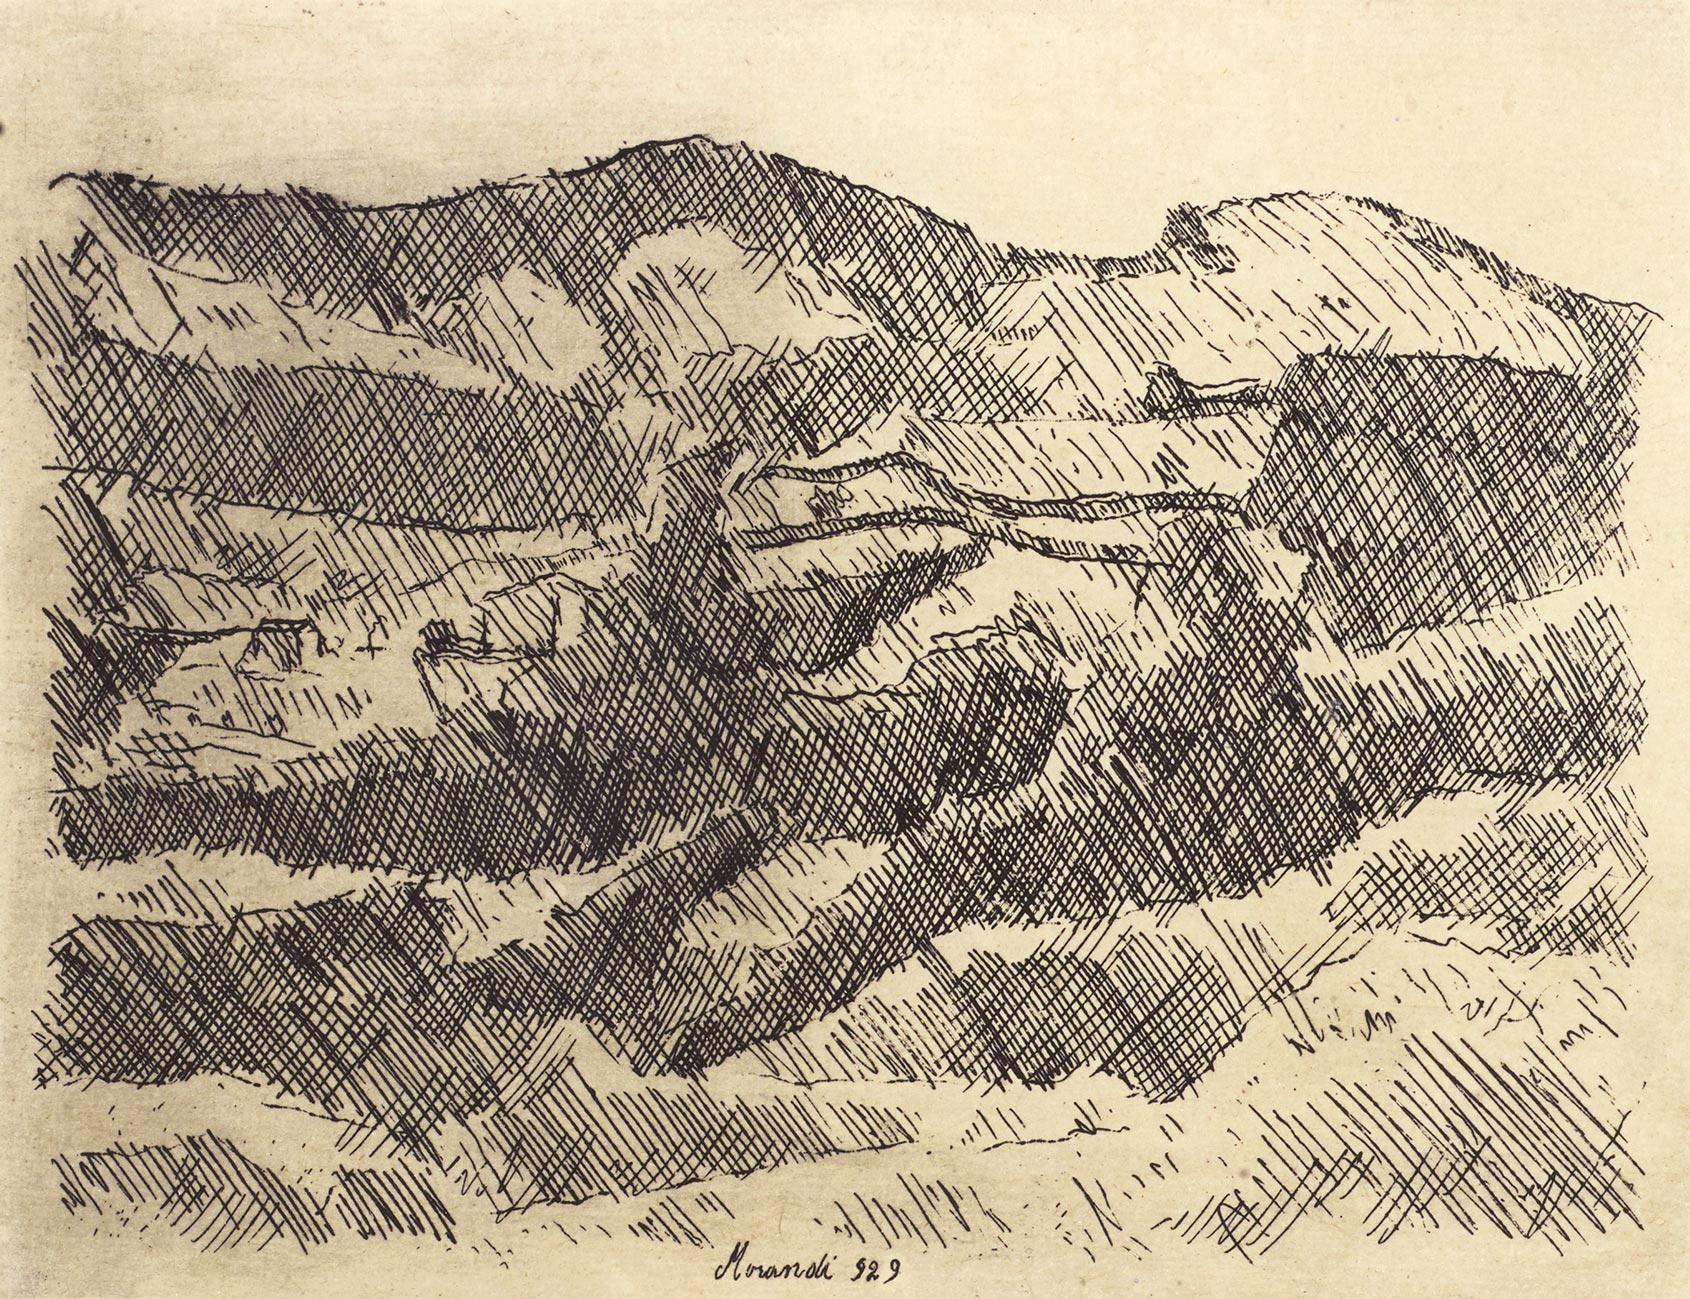 Giorgio Morandi, Mountains of Grizzana, 1929